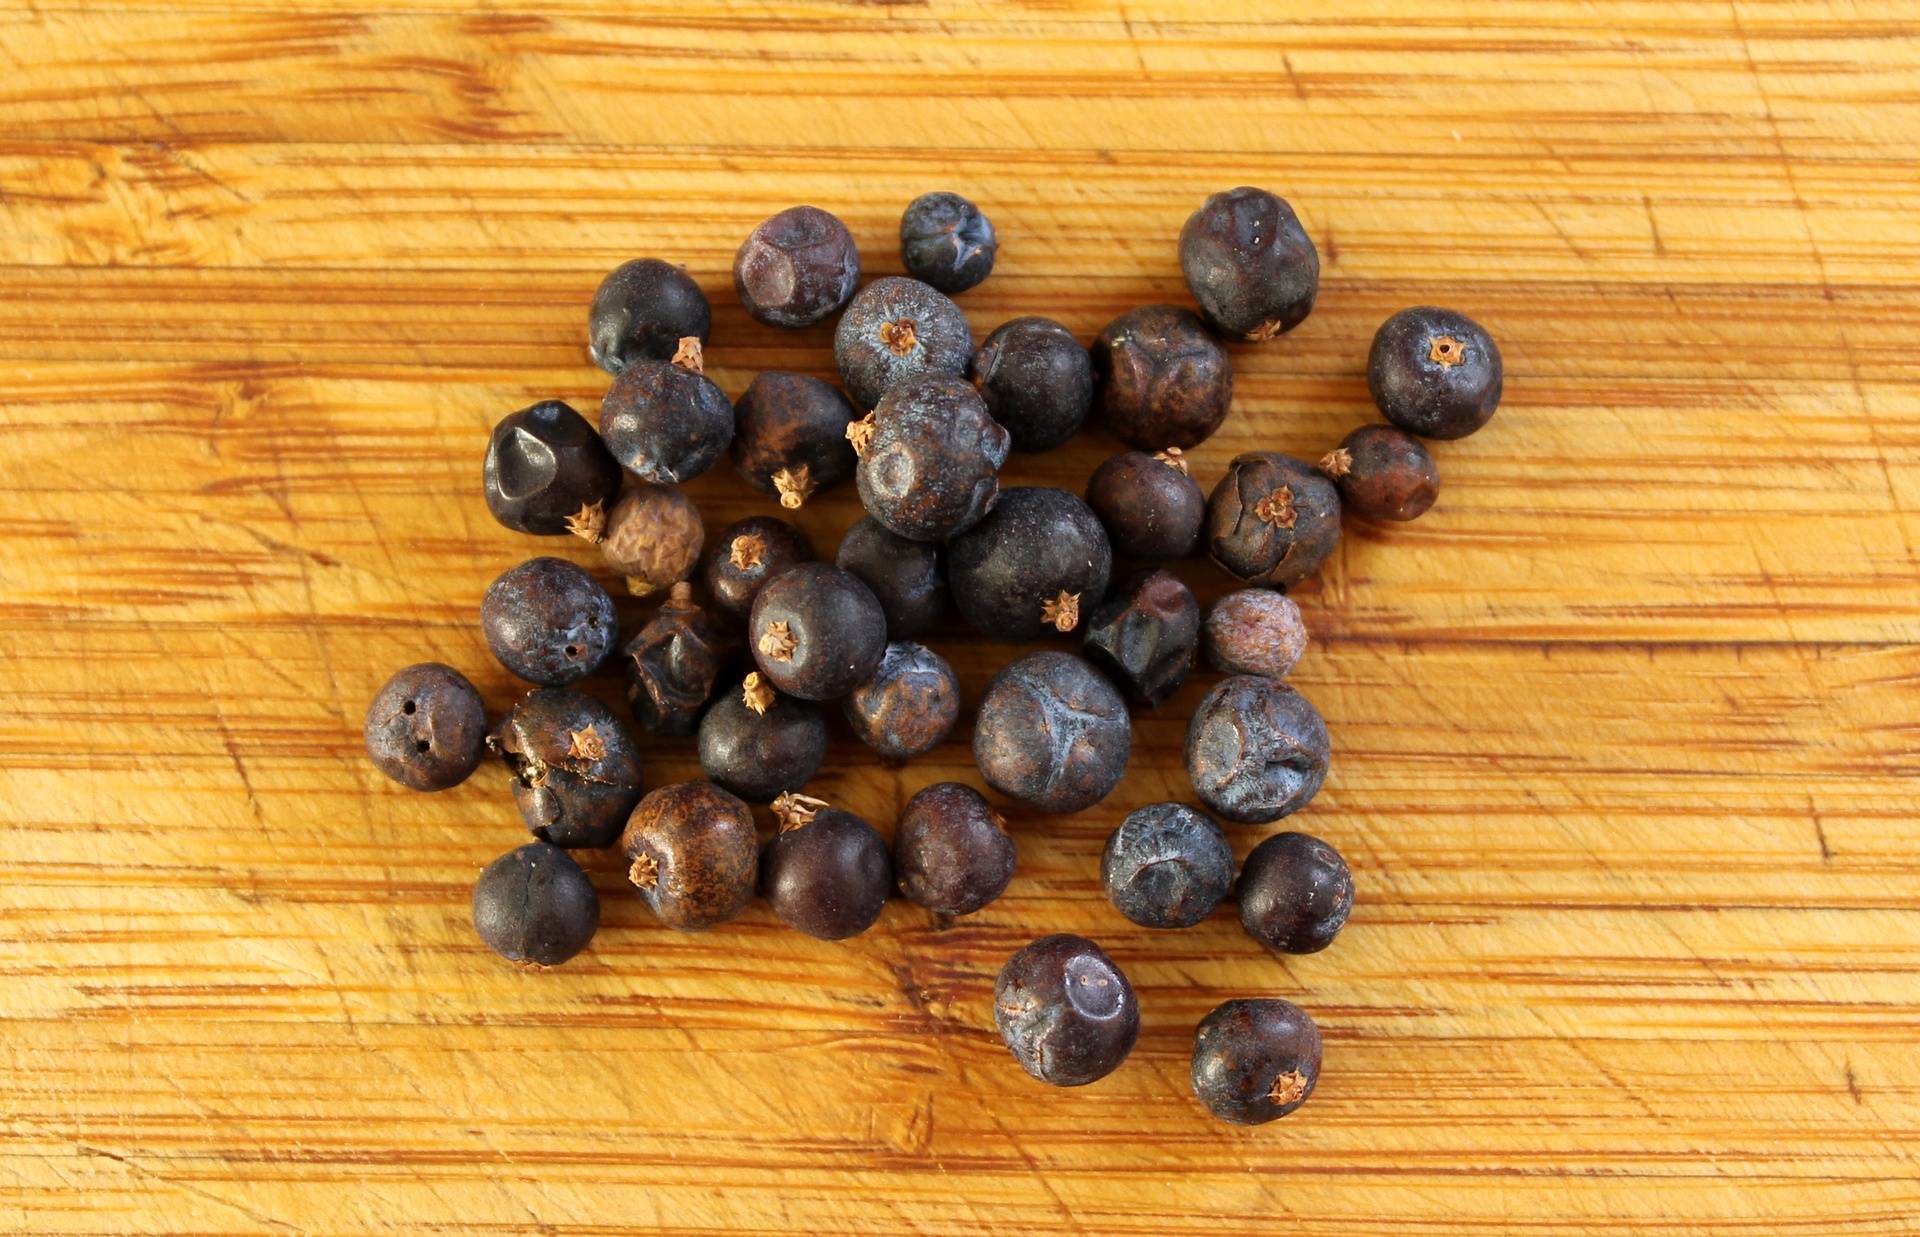 Dried juniper berries.